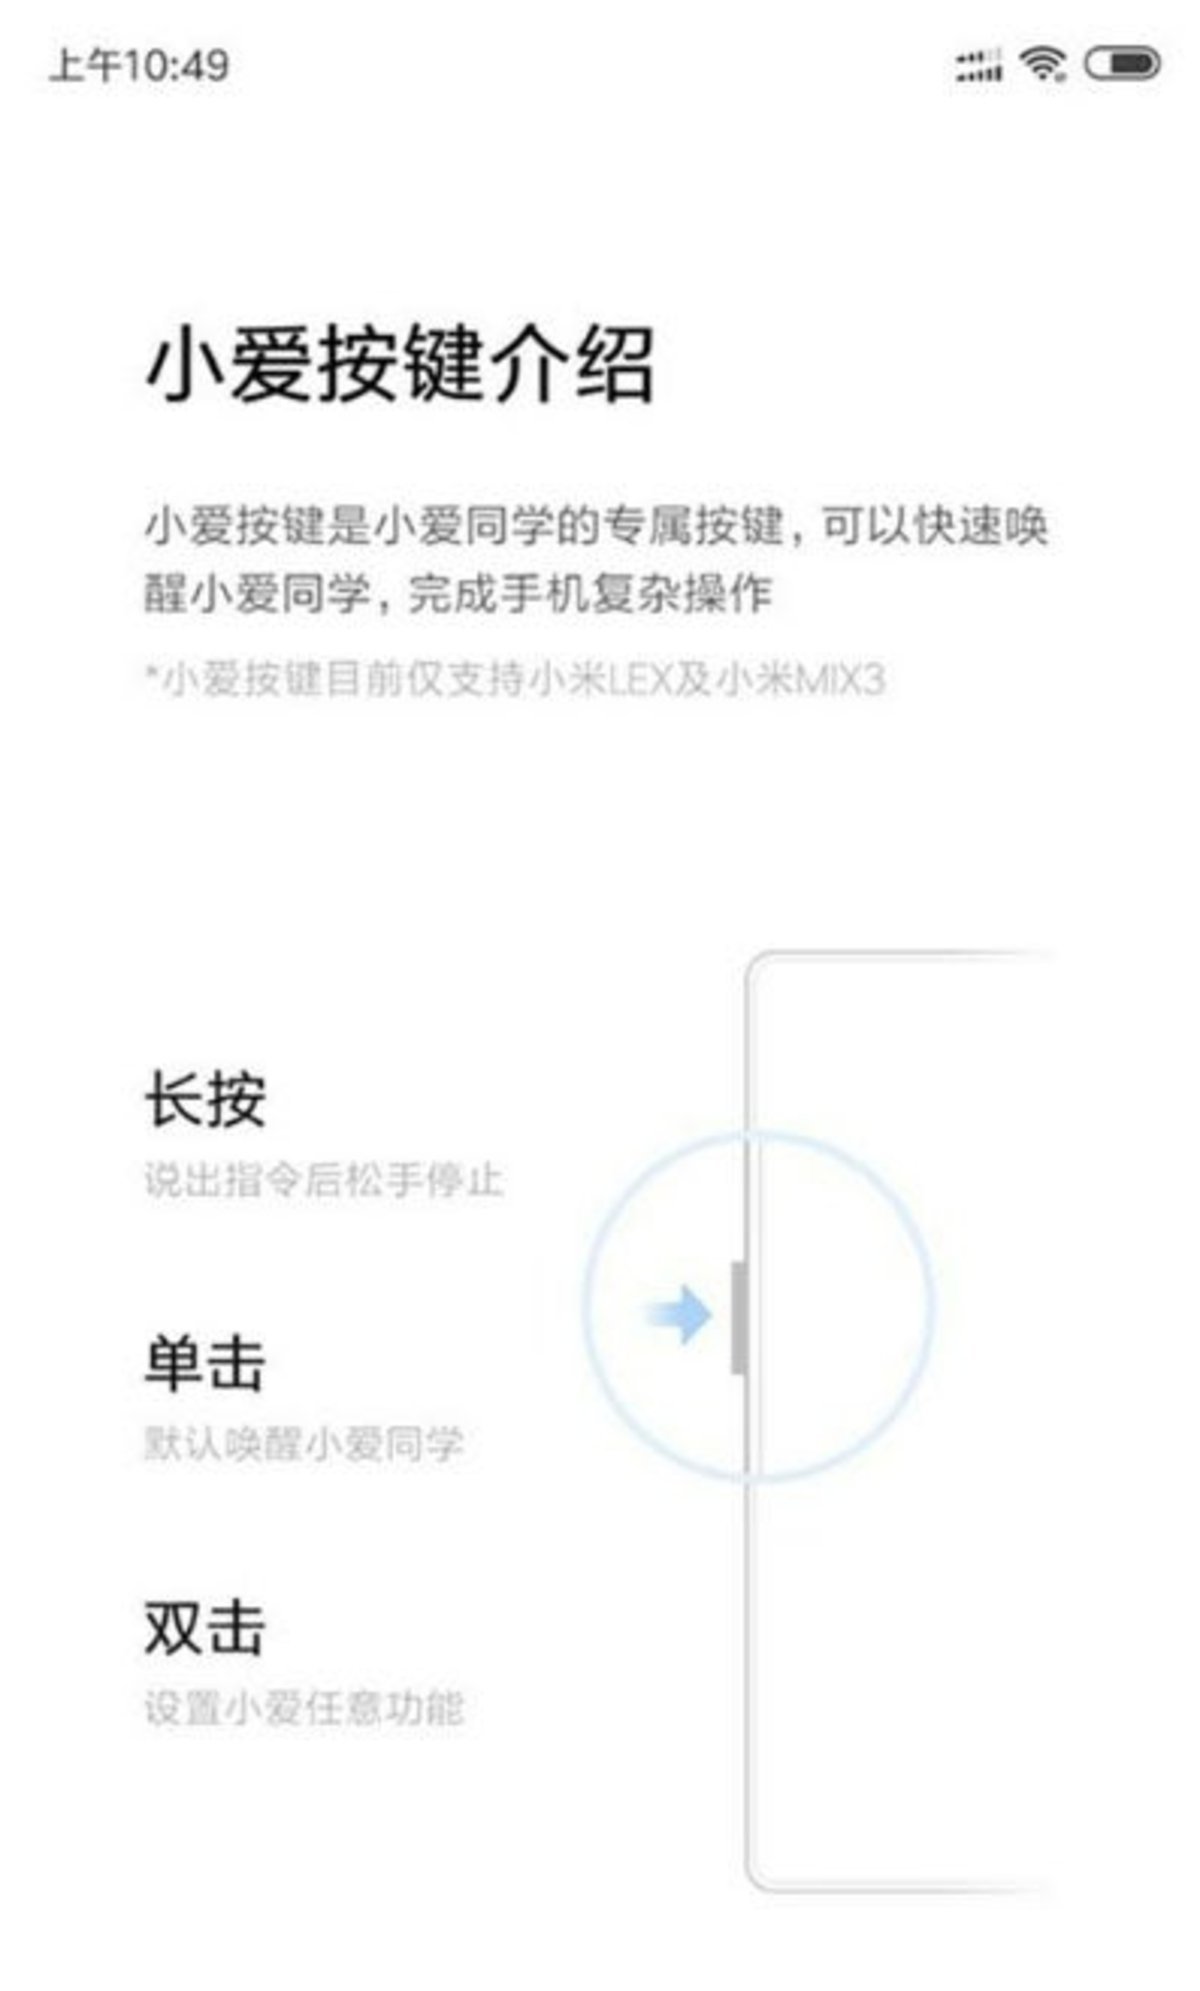 El Xiaomi Mi Mix 3 tendrá un botón para activar el asistente Xiao AI